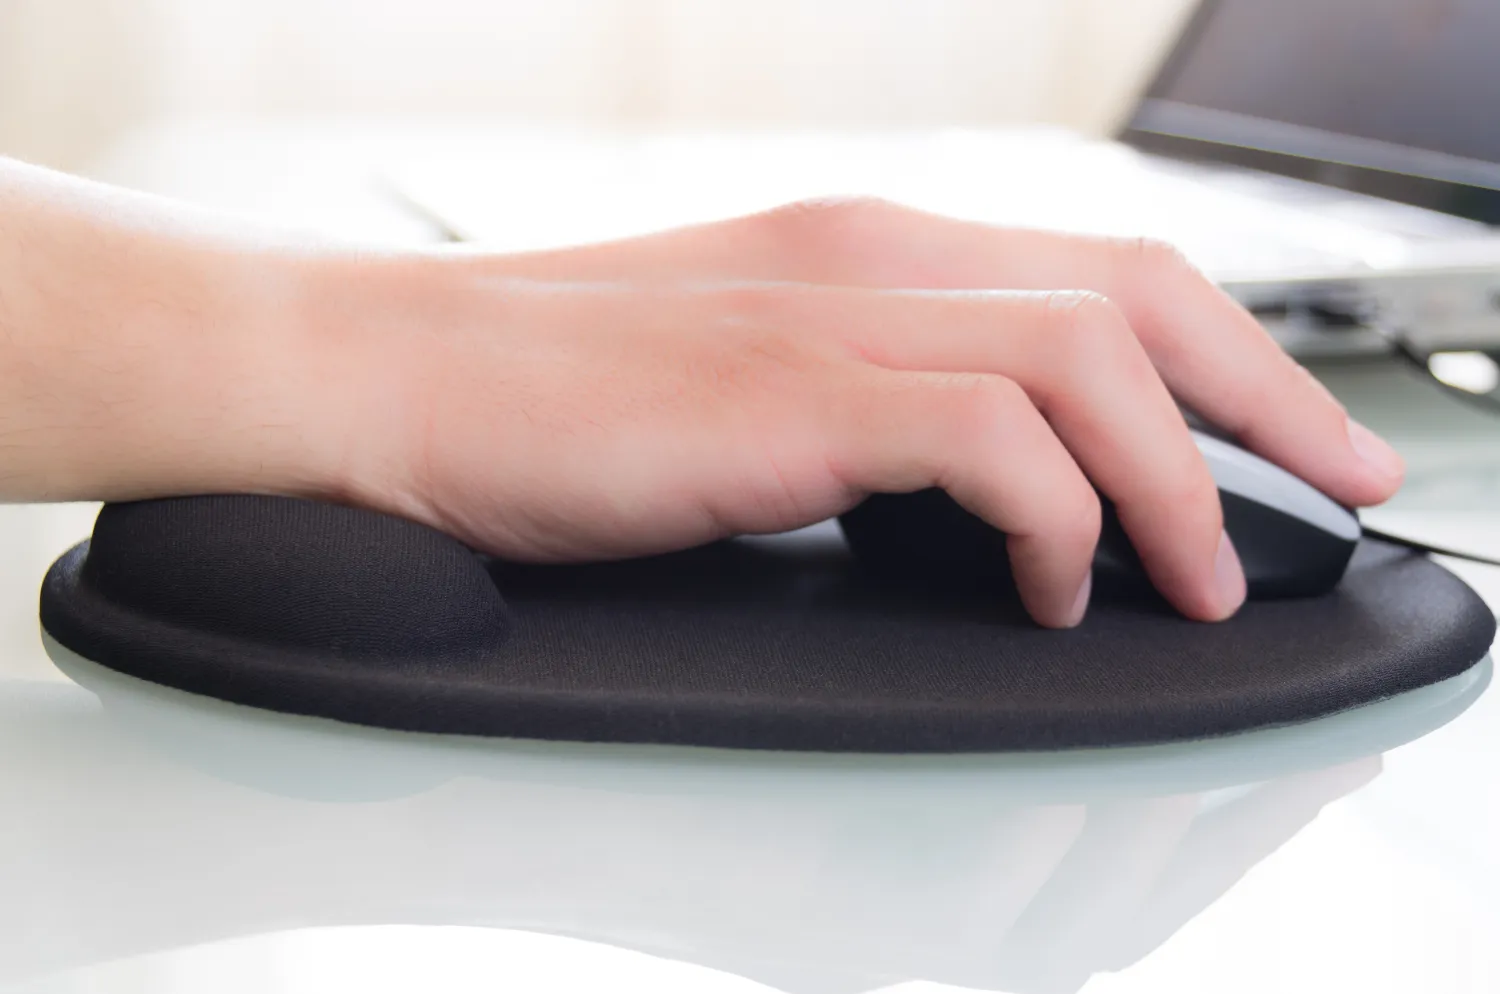 Il tappetino poggiapolsi ergonomico per mouse serve davvero?